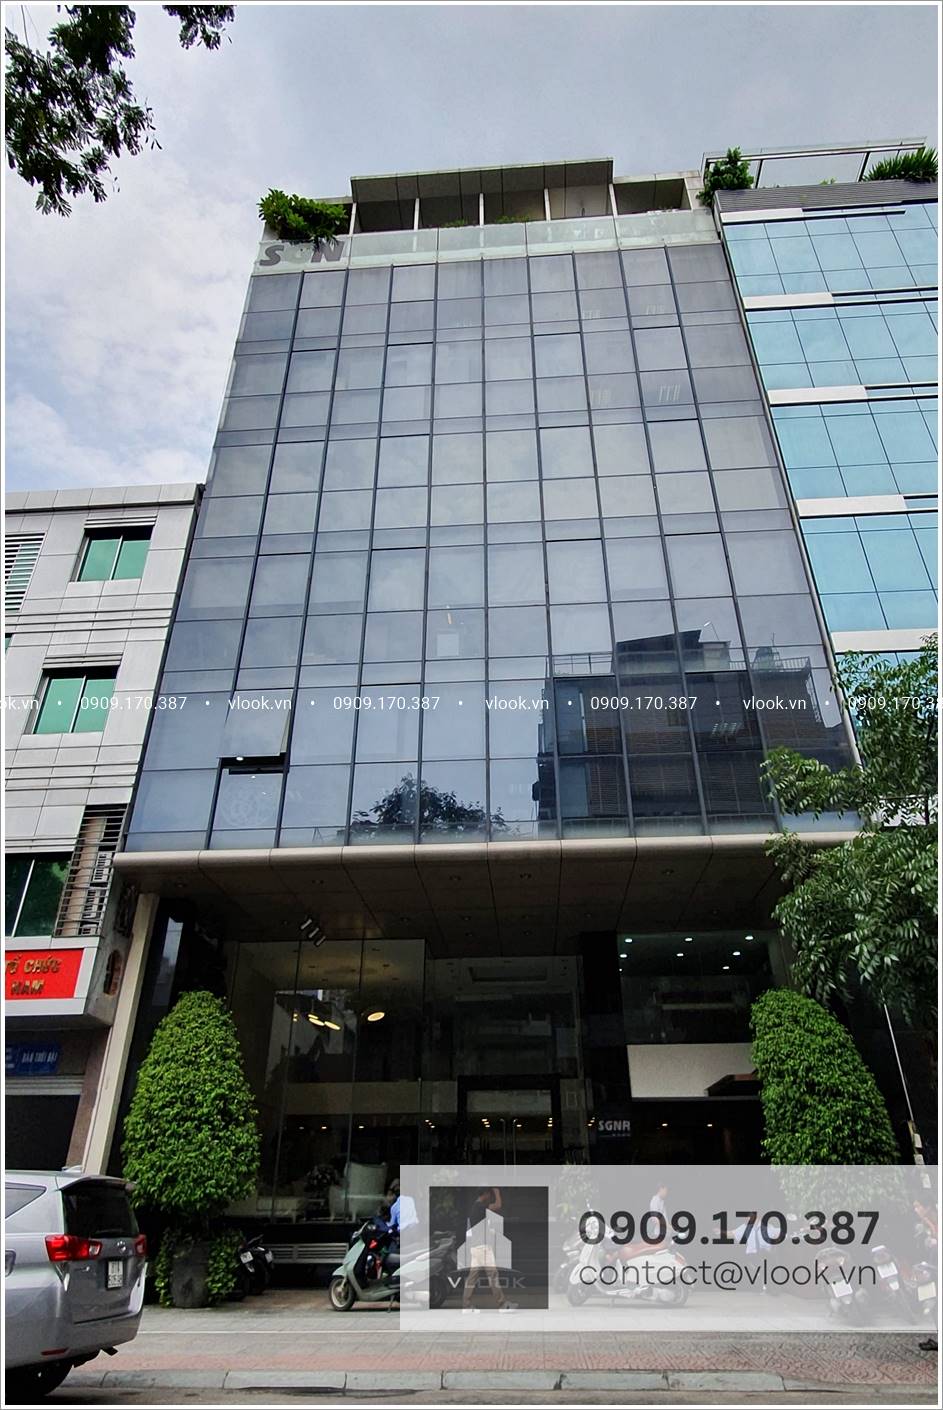 SGNR Building, 161-163 Ký Con, Phường Nguyễn Thái Bình, Quận 1 - Văn phòng cho thuê TP.HCM - vlook.vn